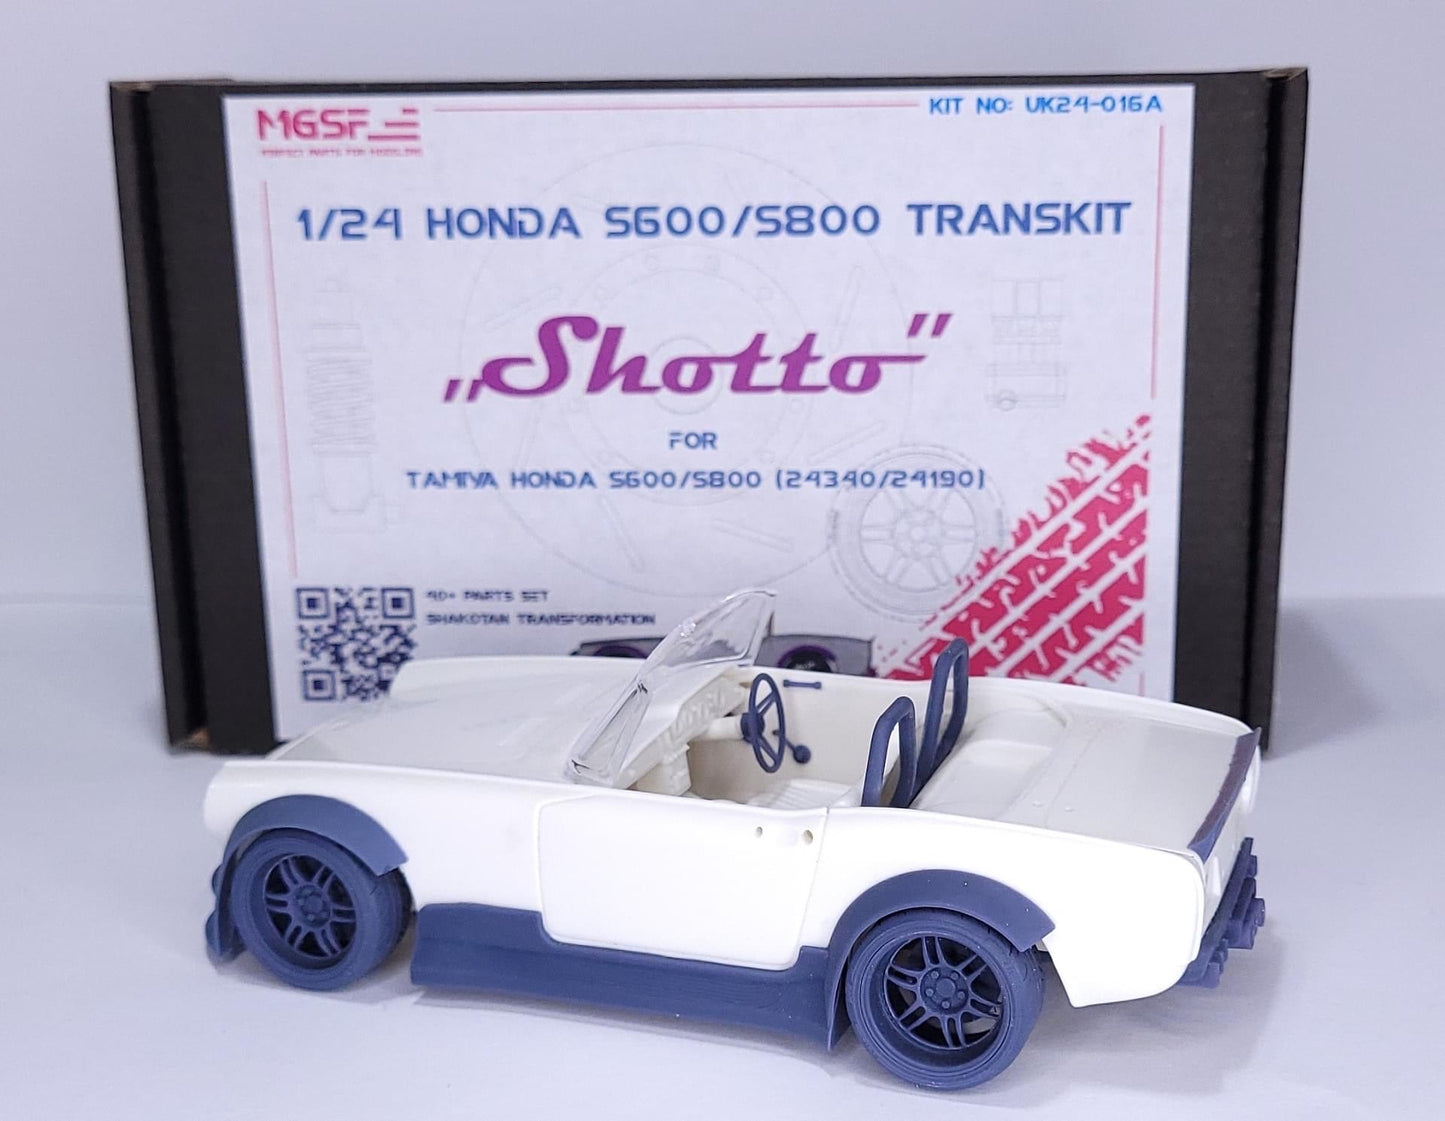 KIT DE TRANSPORT HONDA S600/S800 SHAKOTAN SHOTTO 